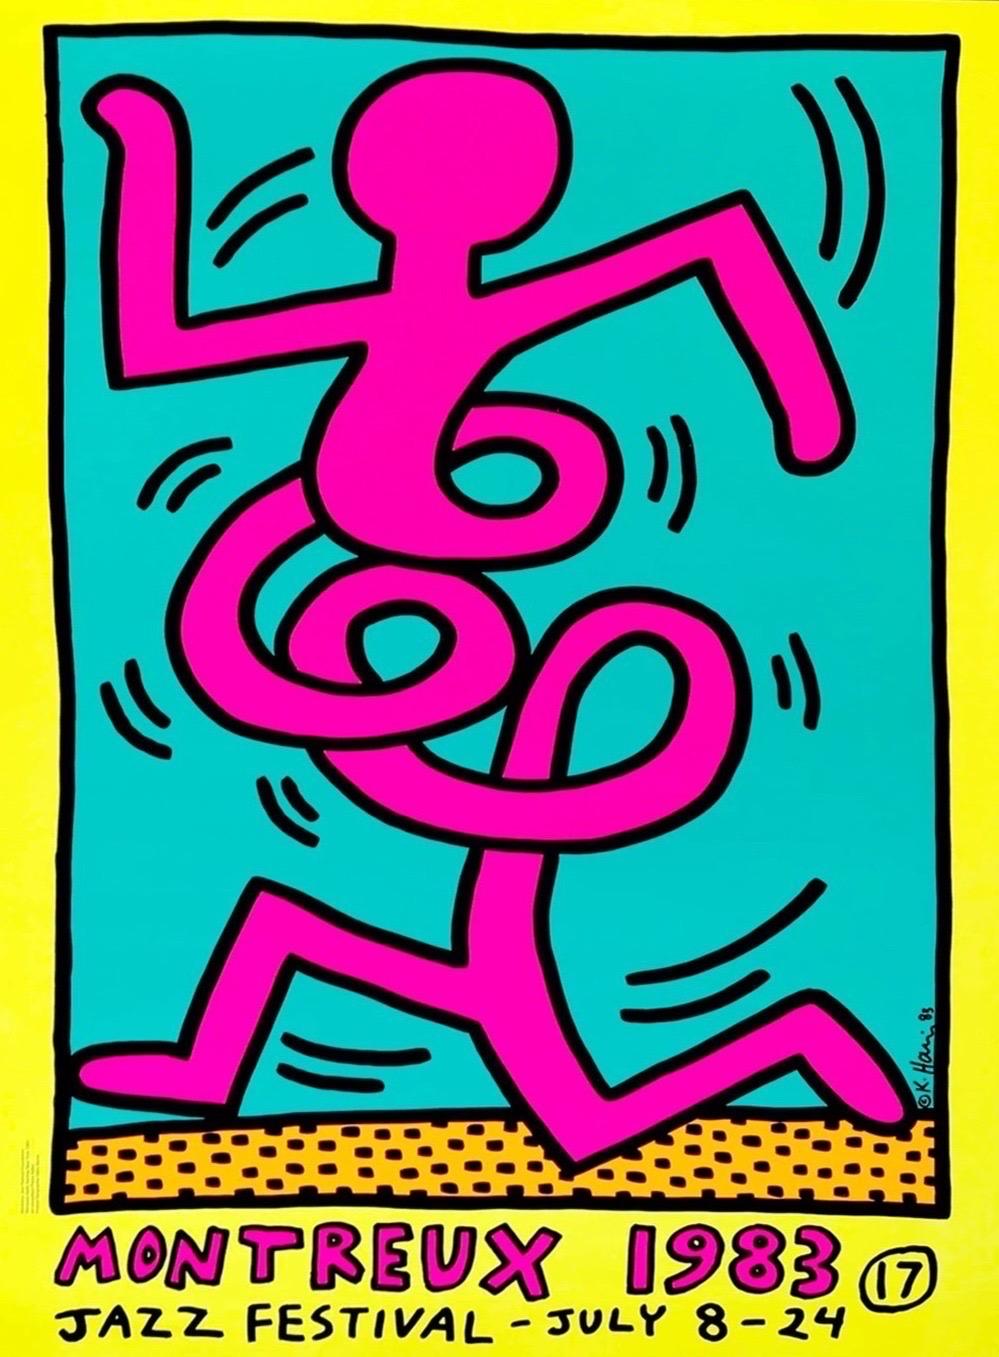 Montreux-Jazz Festival-Plakate (Set aus 3)

Keith Haring wurde eingeladen, die Plakate für das 17. Montreux Jazz Festival 1983 zu gestalten, nachdem der Organisator Pierre Keller den Künstler einige Monate nach seiner ersten Ausstellung in der Tony